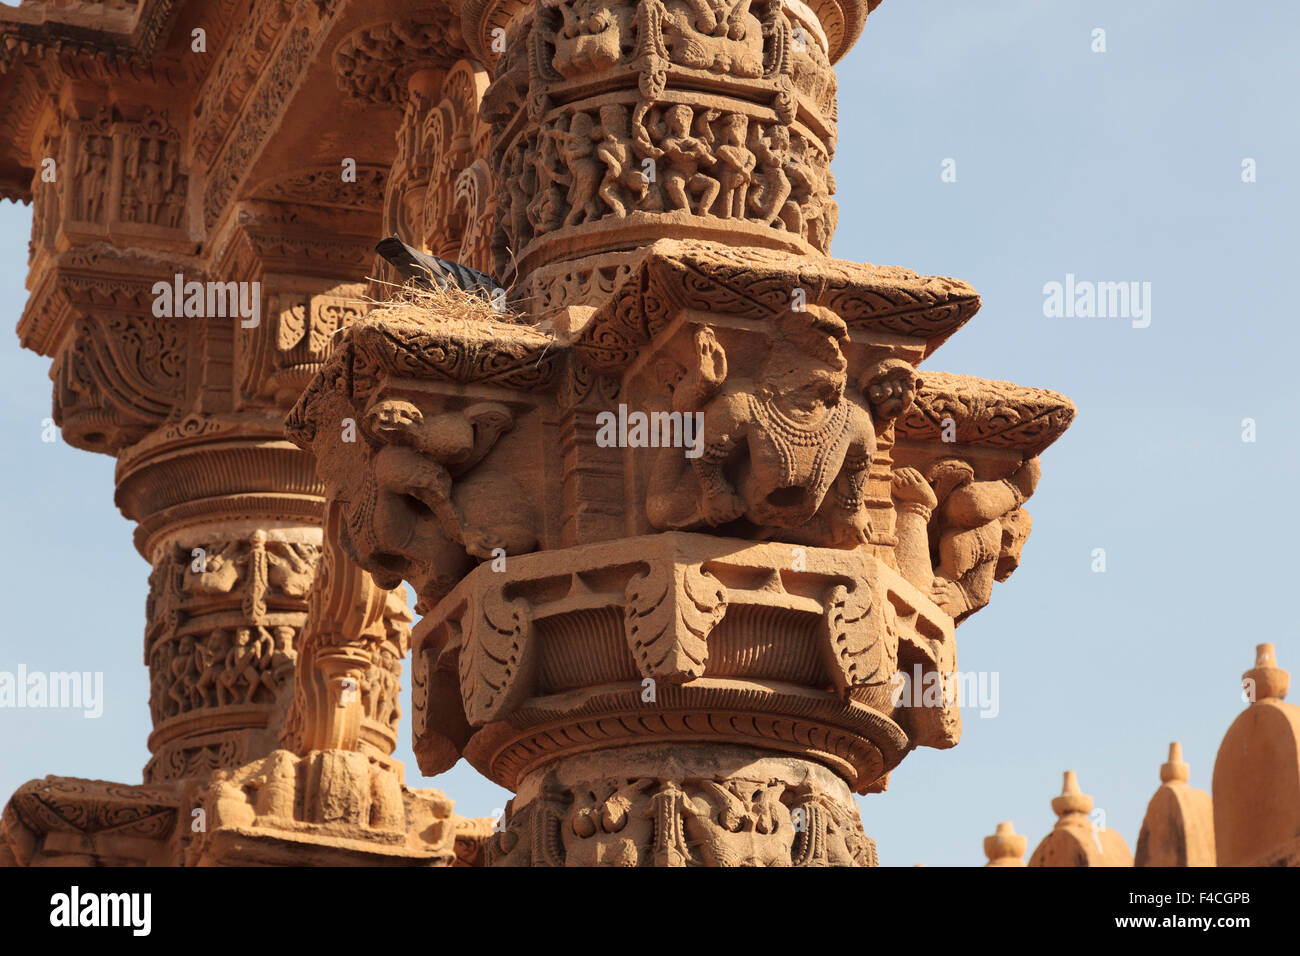 L'Inde, Rajasthan, Jaisalmer. Les oiseaux nichent sur les roches anciennes à sculpter le temple de Jain. Banque D'Images